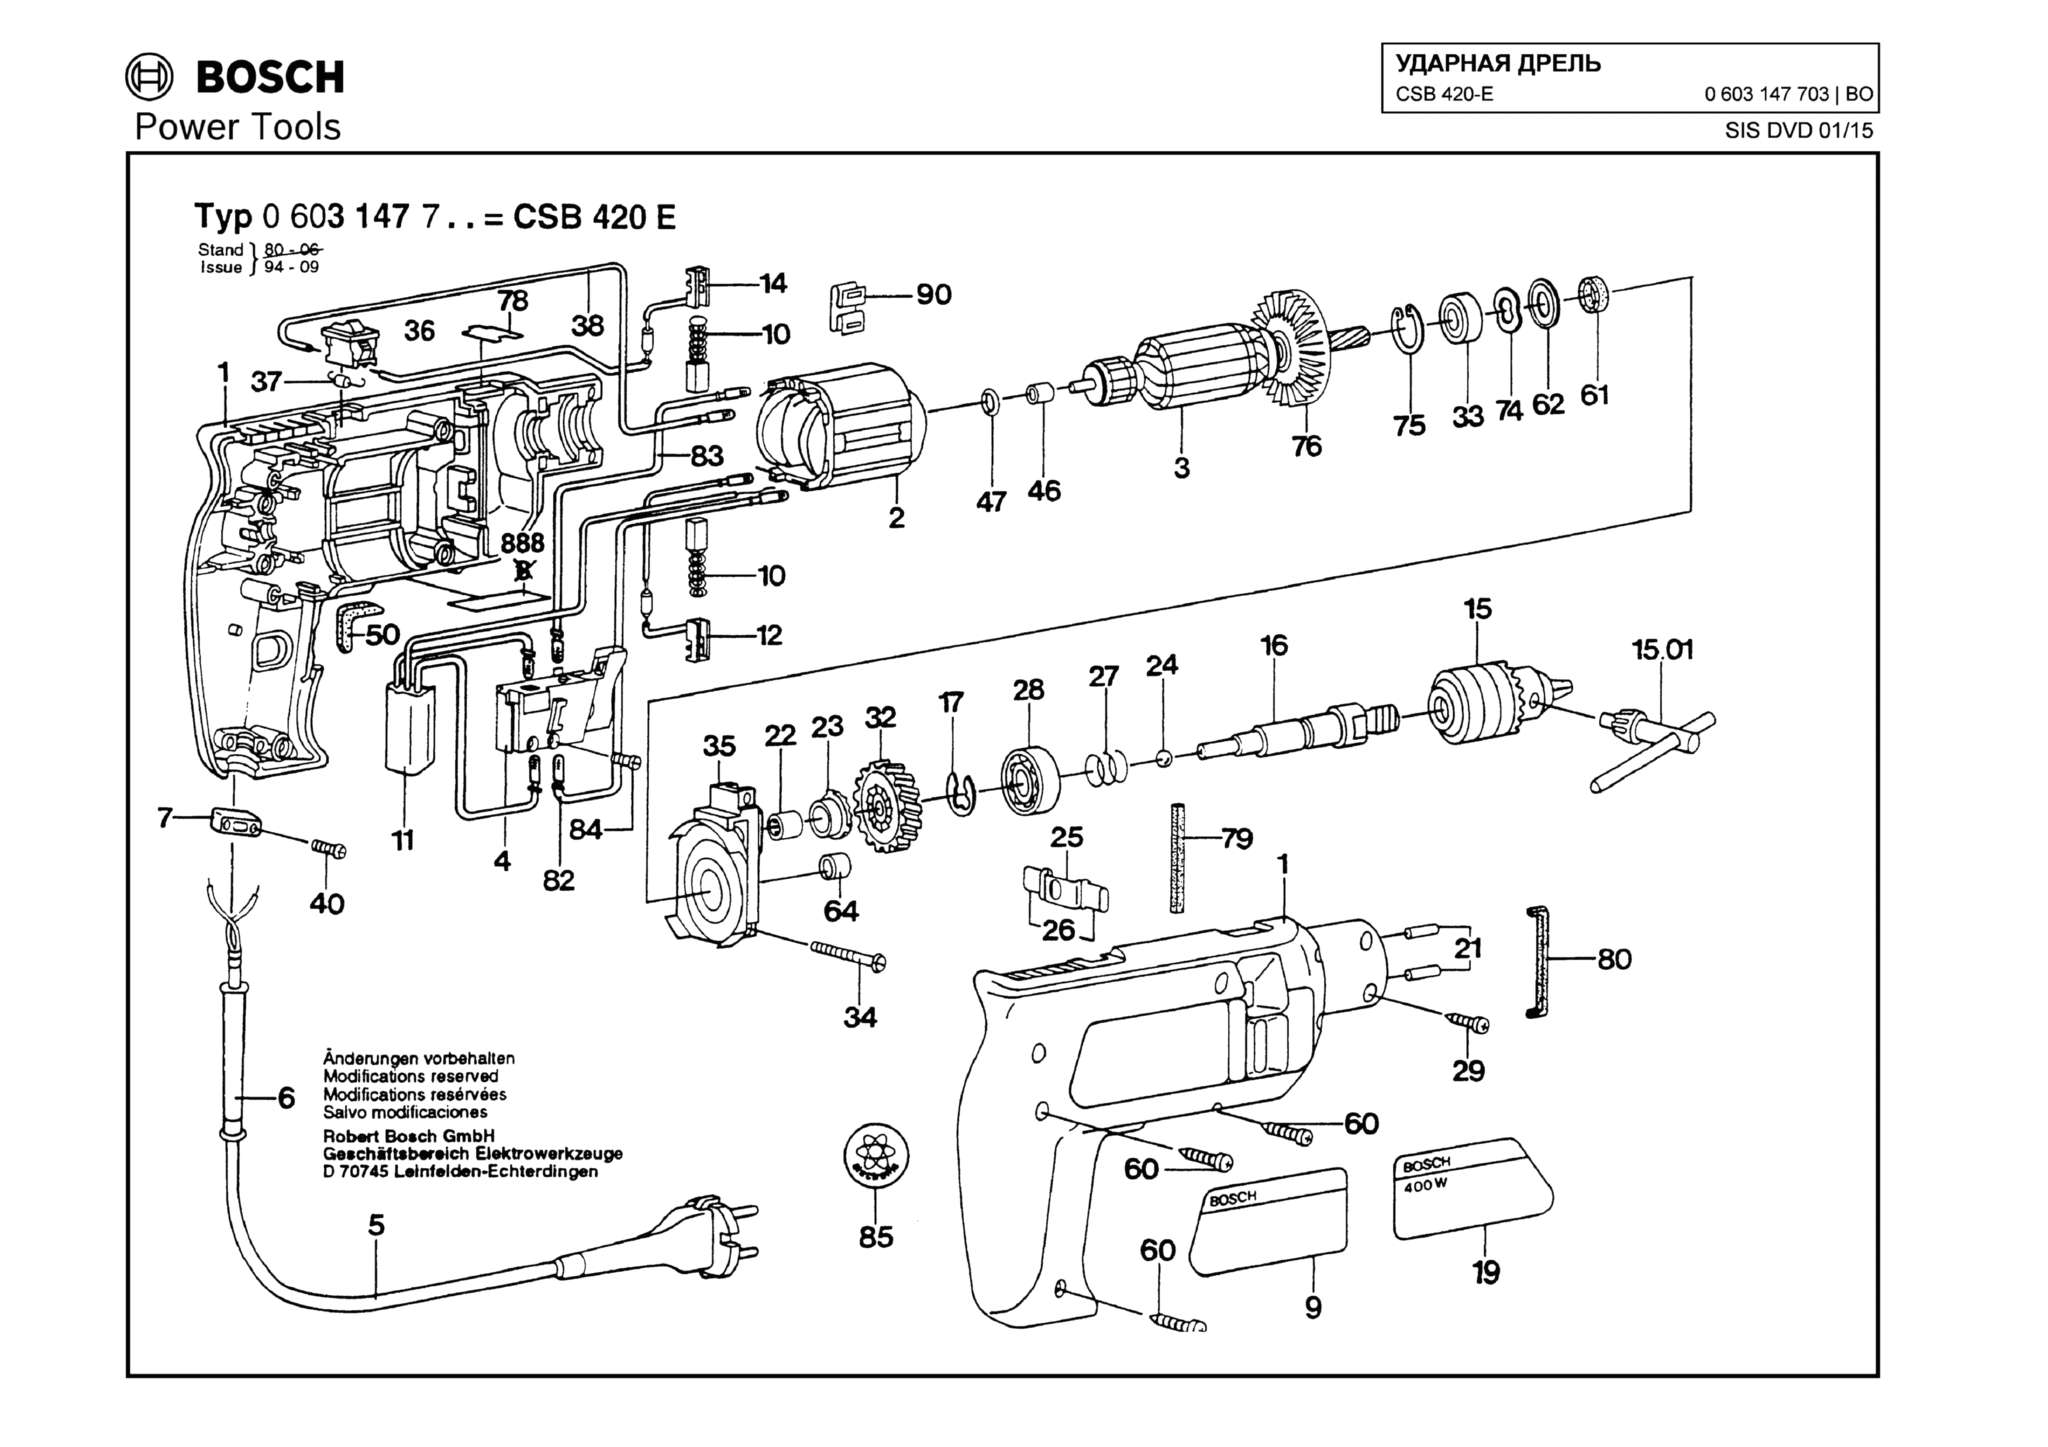 Запчасти, схема и деталировка Bosch CSB 420-E (ТИП 0603147703)